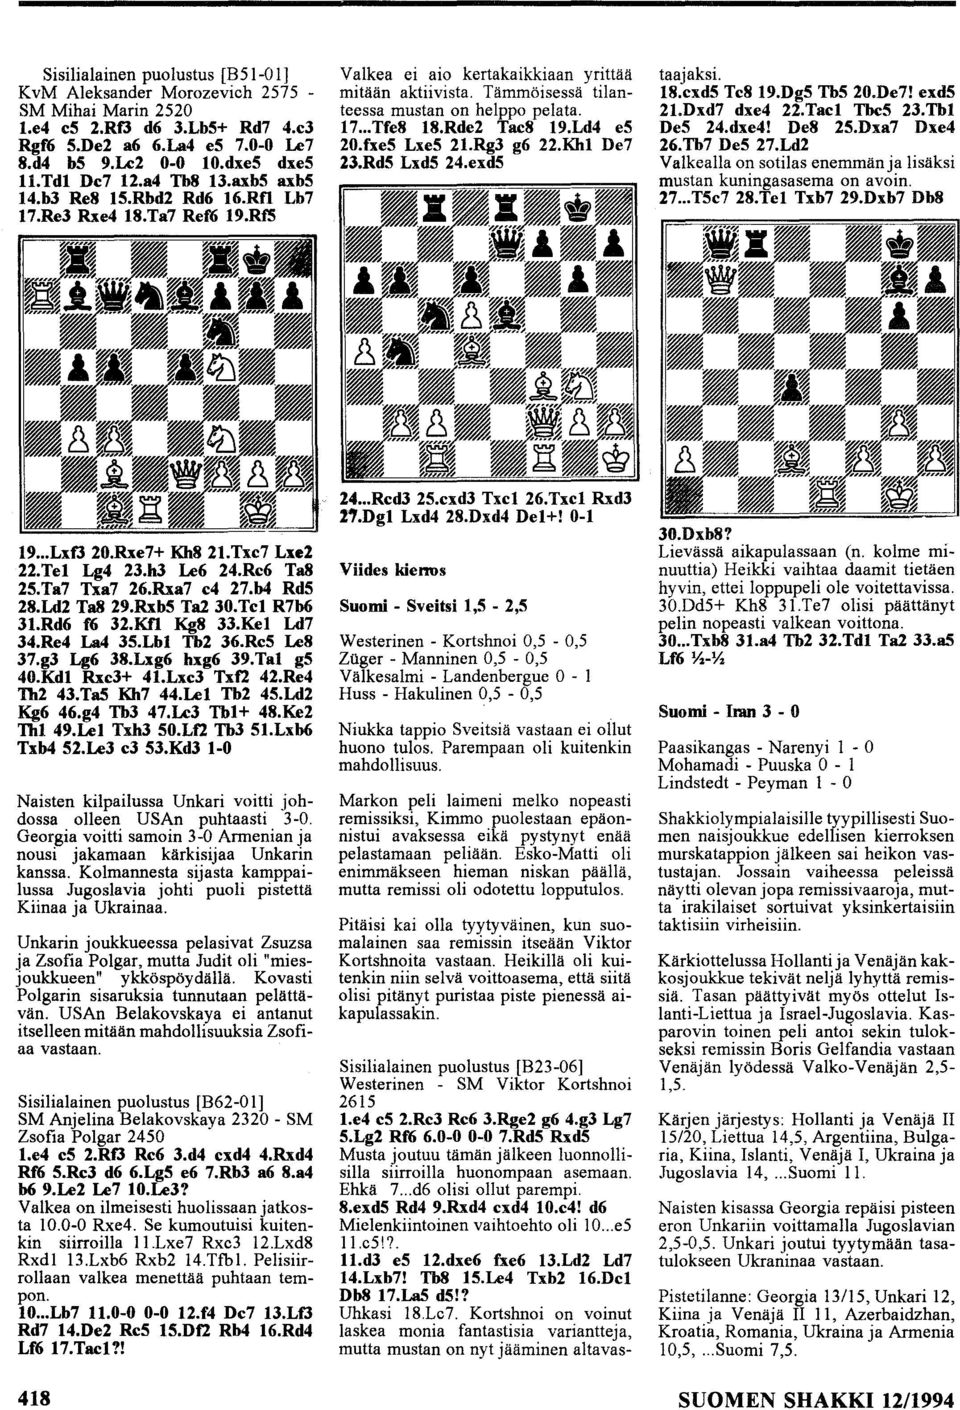 Rde2 Tac8 19.Ld4 e5 20.fxe5 Lxe5 21.Rg3 g6 22.Khl De7 23.Rd5 Lxd5 24.exd5 Sisilialainen puolustus [B23-06] Westerinen - SM Viktor Kortshnoi 2615 1.e4 e5 2.Re3 Re6 3.Rge2 g6 4.g3 Lg7 5.Lg2 Rf6 6.